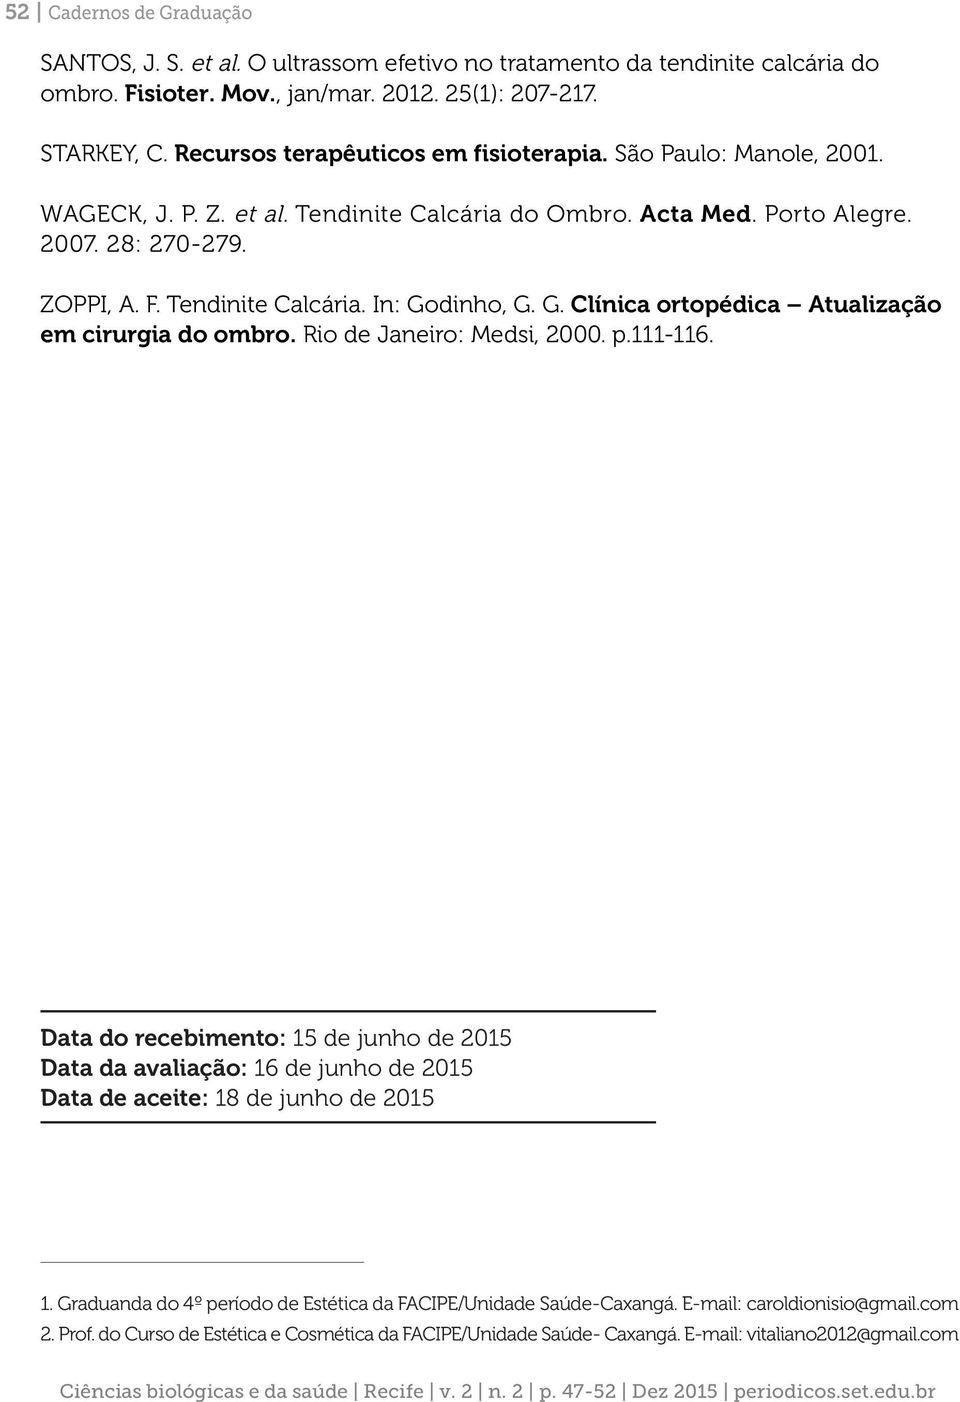 G. Clínica ortopédica Atualização em cirurgia do ombro. Rio de Janeiro: Medsi, 2000. p.111-116.